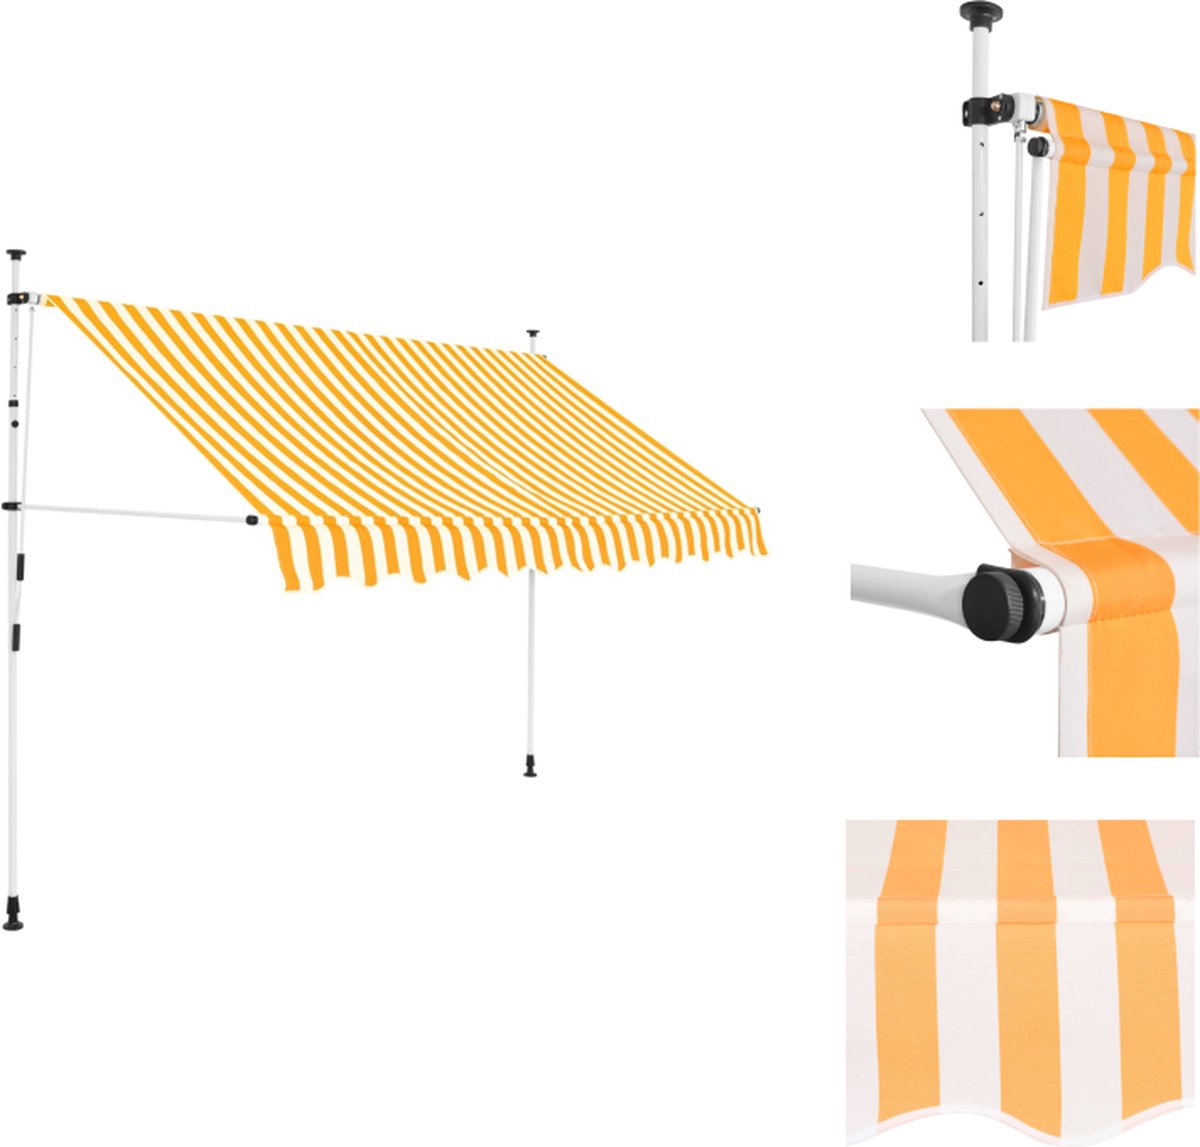 VidaXL Uitschuifbare zonwering 250 cm breed Oranje Wit Handmatig bediend Vensterzonwering